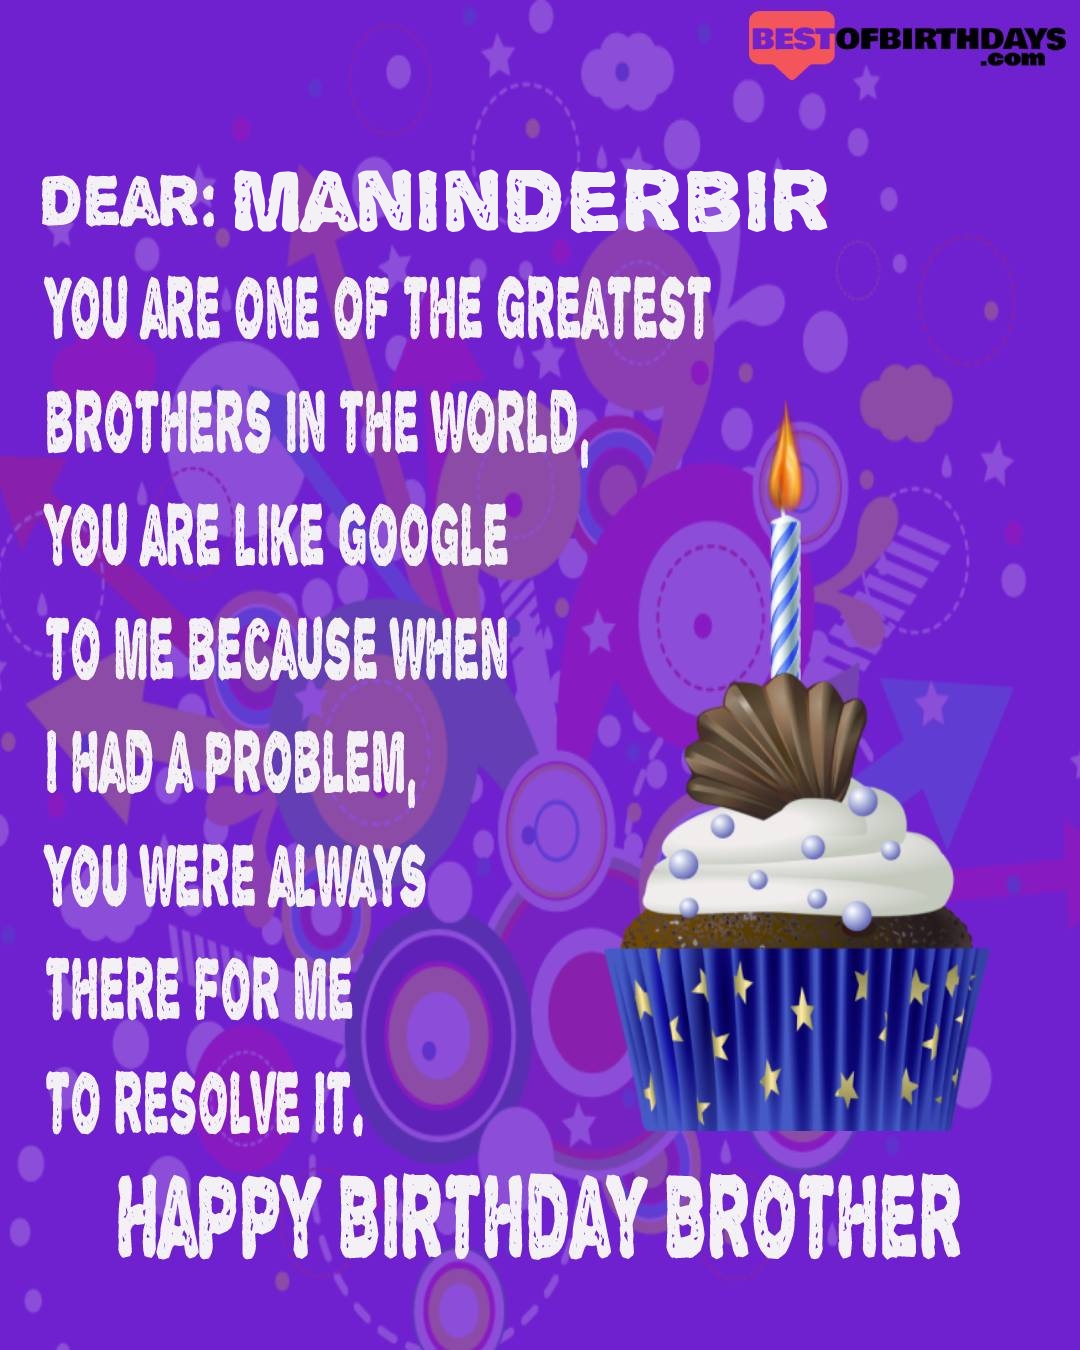 Happy birthday maninderbir bhai brother bro